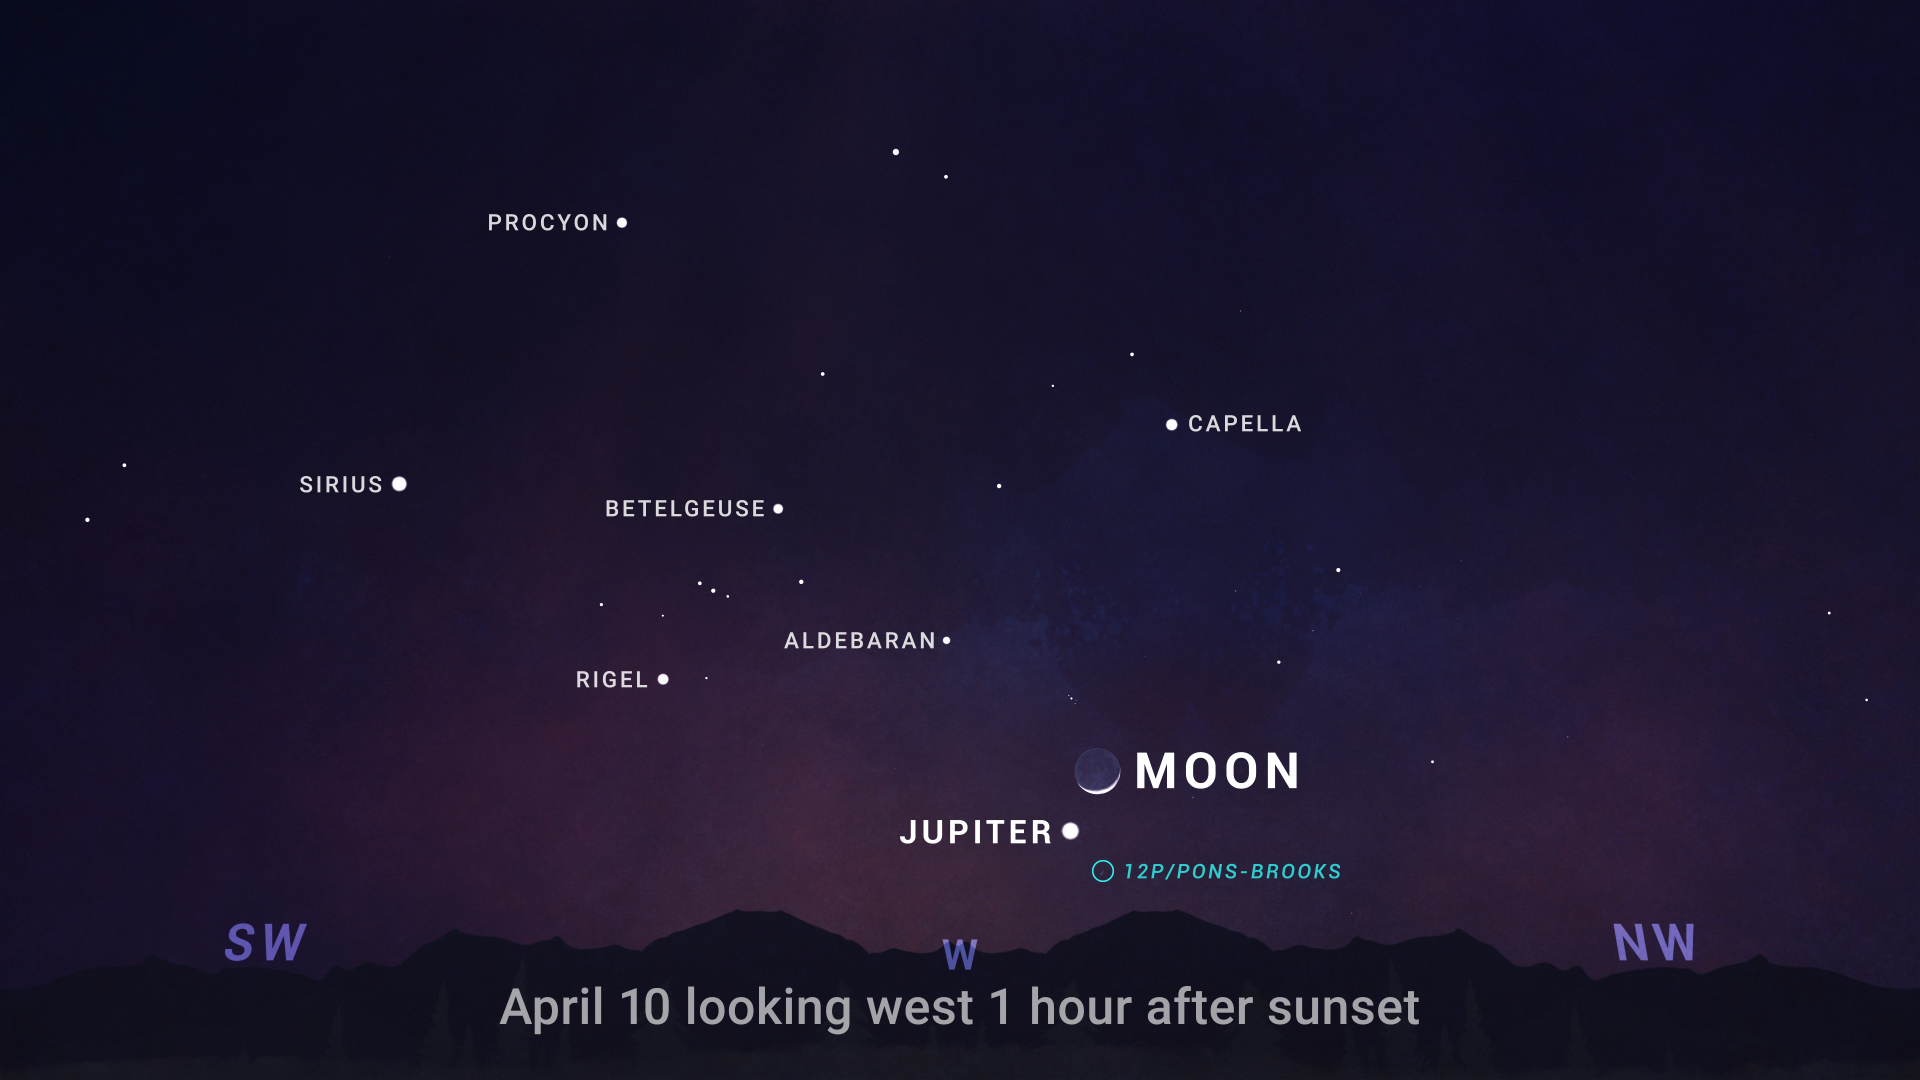 Pokazana mapa nieba przedstawia wieczorne niebo skierowane na zachód, godzinę po zachodzie słońca 10 kwietnia 2024 r. Sierp Księżyca pojawia się stosunkowo nisko na niebie poniżej środka, a Jowisz bezpośrednio pod nim w postaci jasnej białej kropki.  Okrąg wskazuje położenie Komety 12P/Pons-Brooks, tuż pod Jowiszem.  Wysoko na niebie widać wiele jasnych gwiazd, w tym konstelację Oriona.